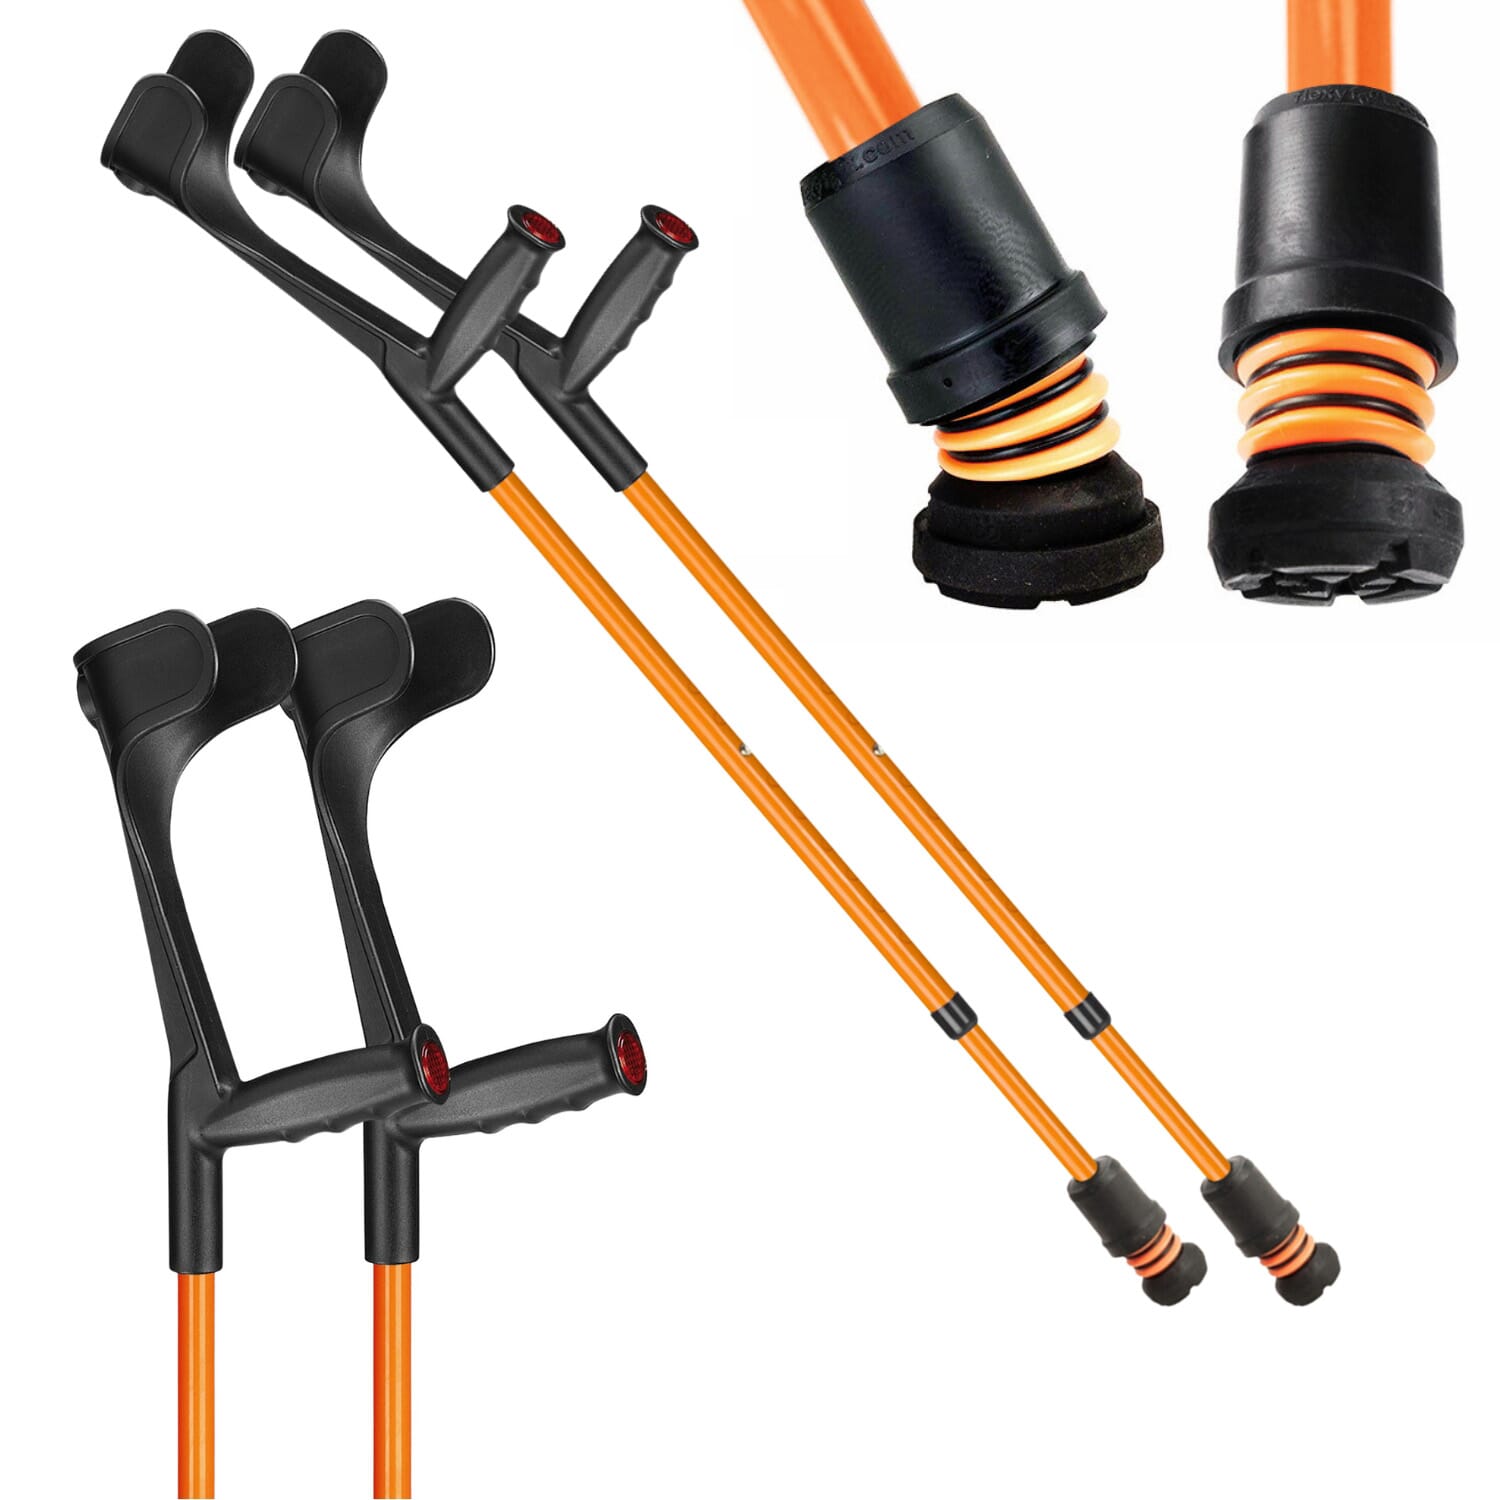 View Flexyfoot Open Cuff Soft Grip Crutches Orange Pair information